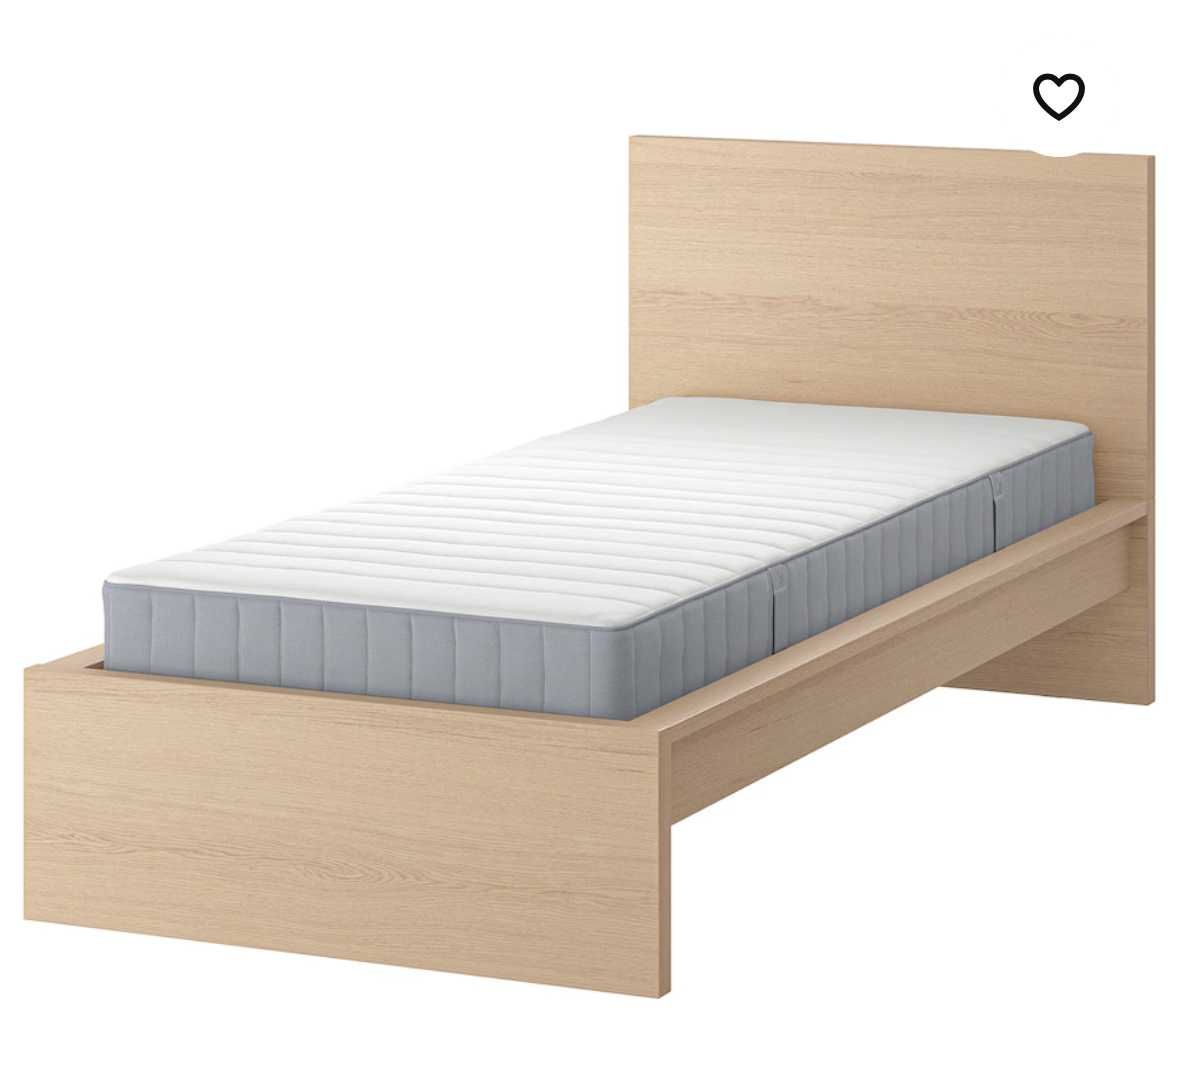 Komplet mebli Ikea dla nastolatka szafa, łóżko i komoda MALM